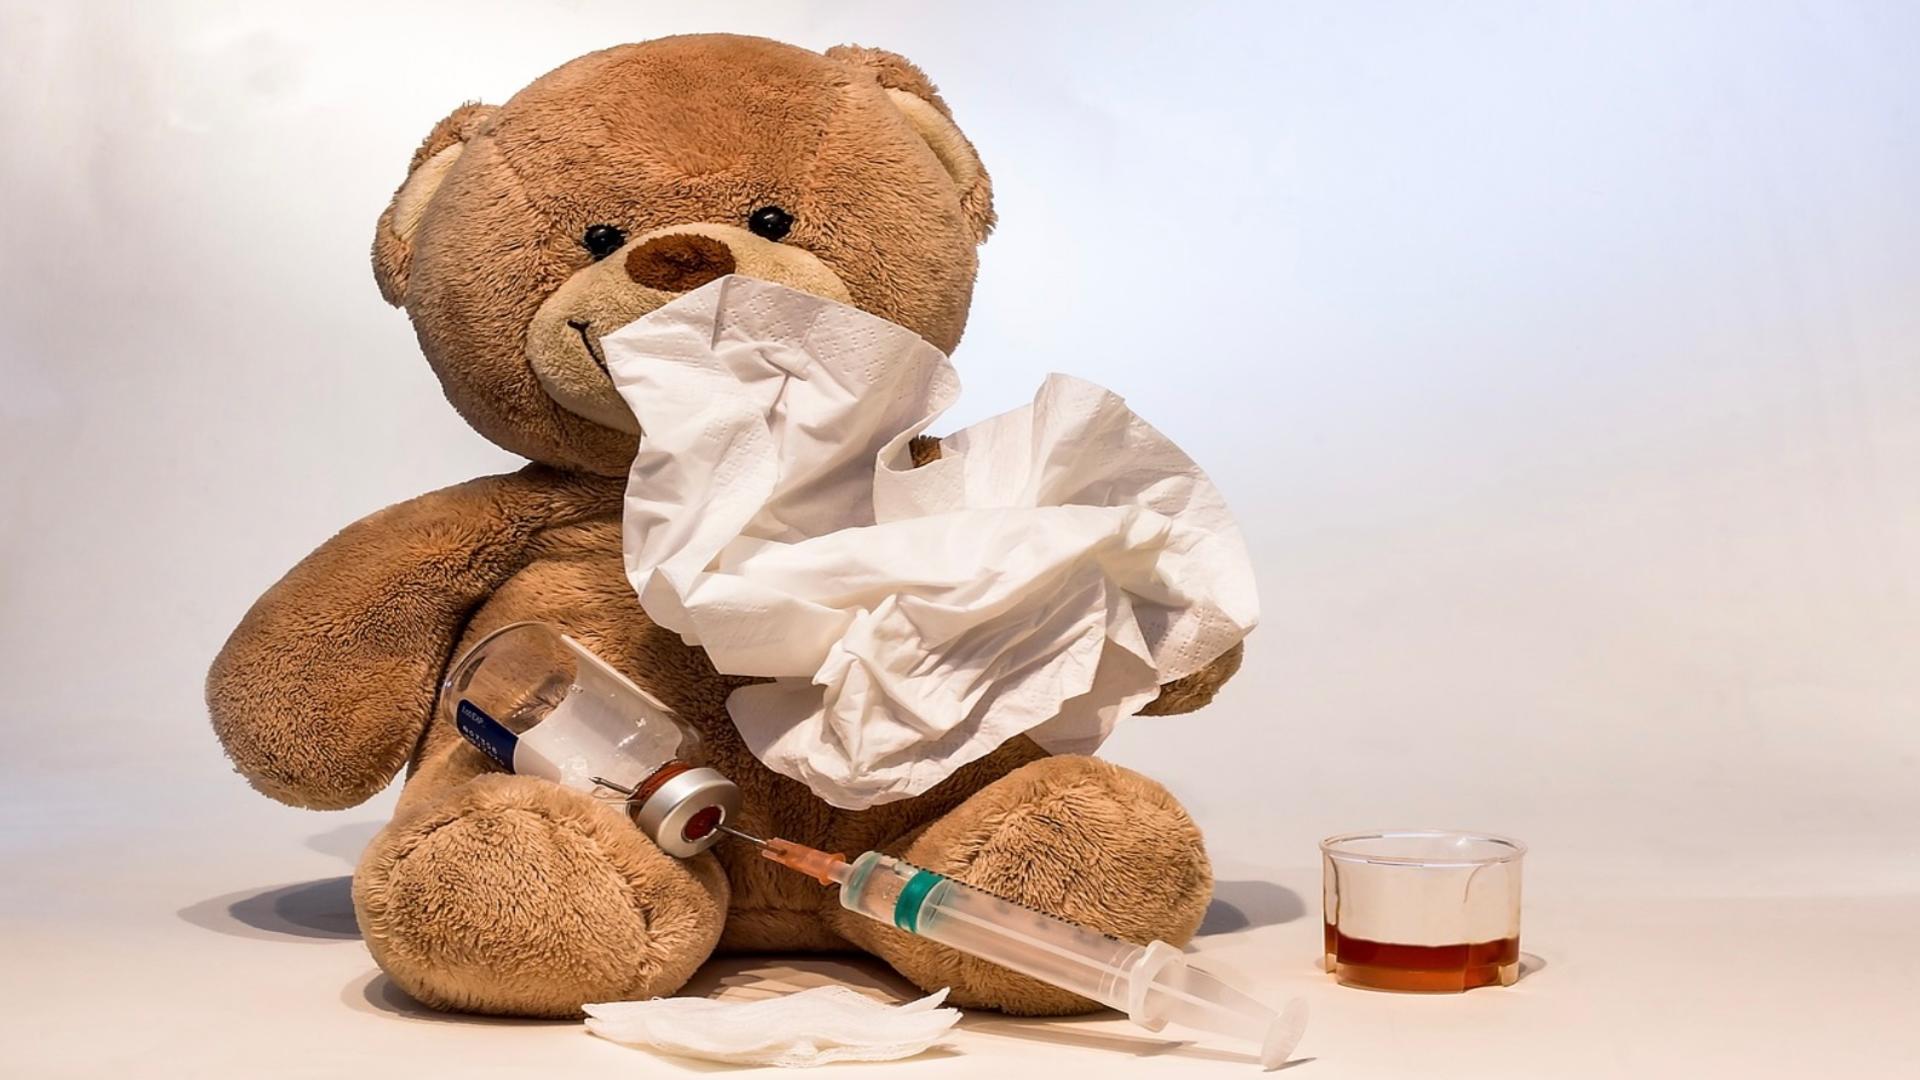 Val de infecții respiratorii și scarlatină, în spitalele de copii: sute de pacienți zilnic